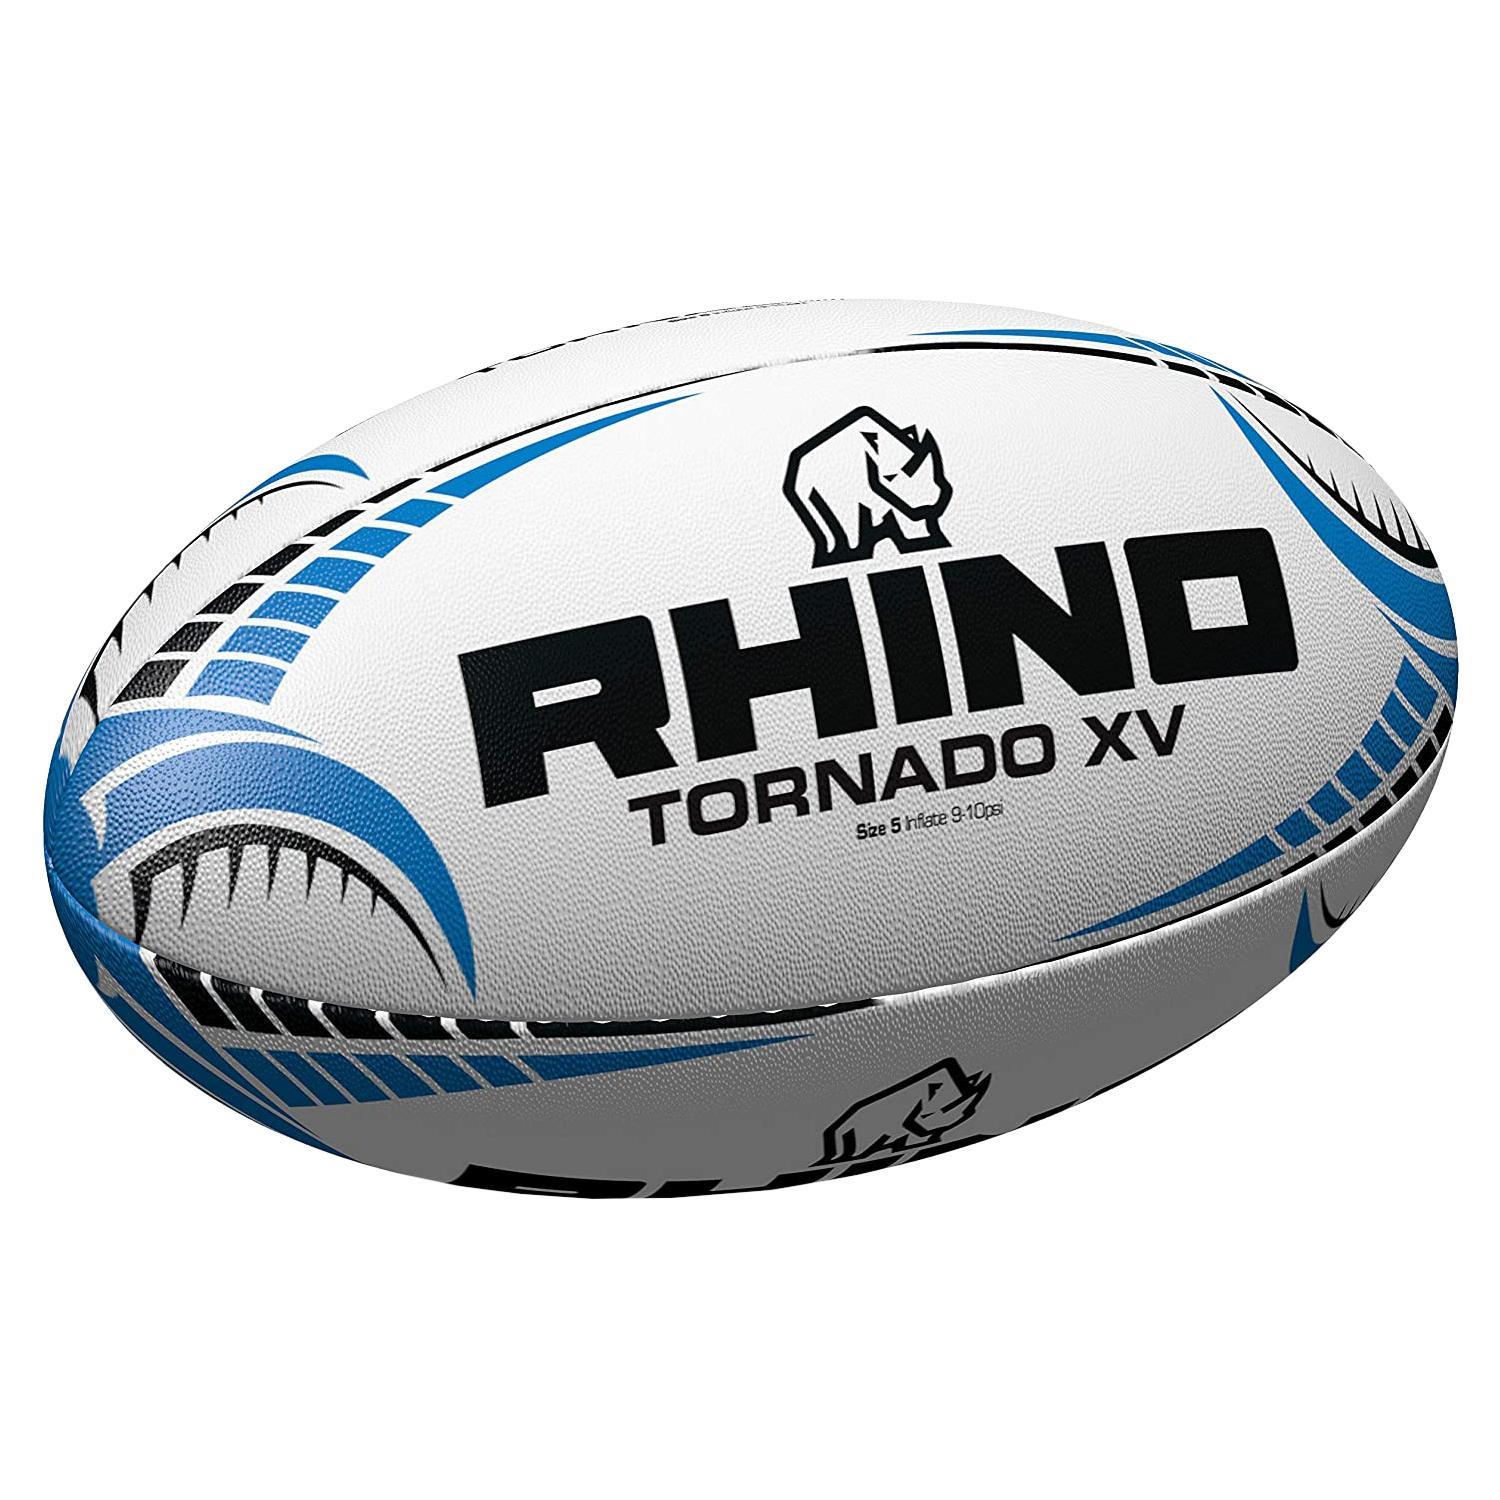 Rhino Tornado XV Rugby Ball (White/Blue/Black) (5)